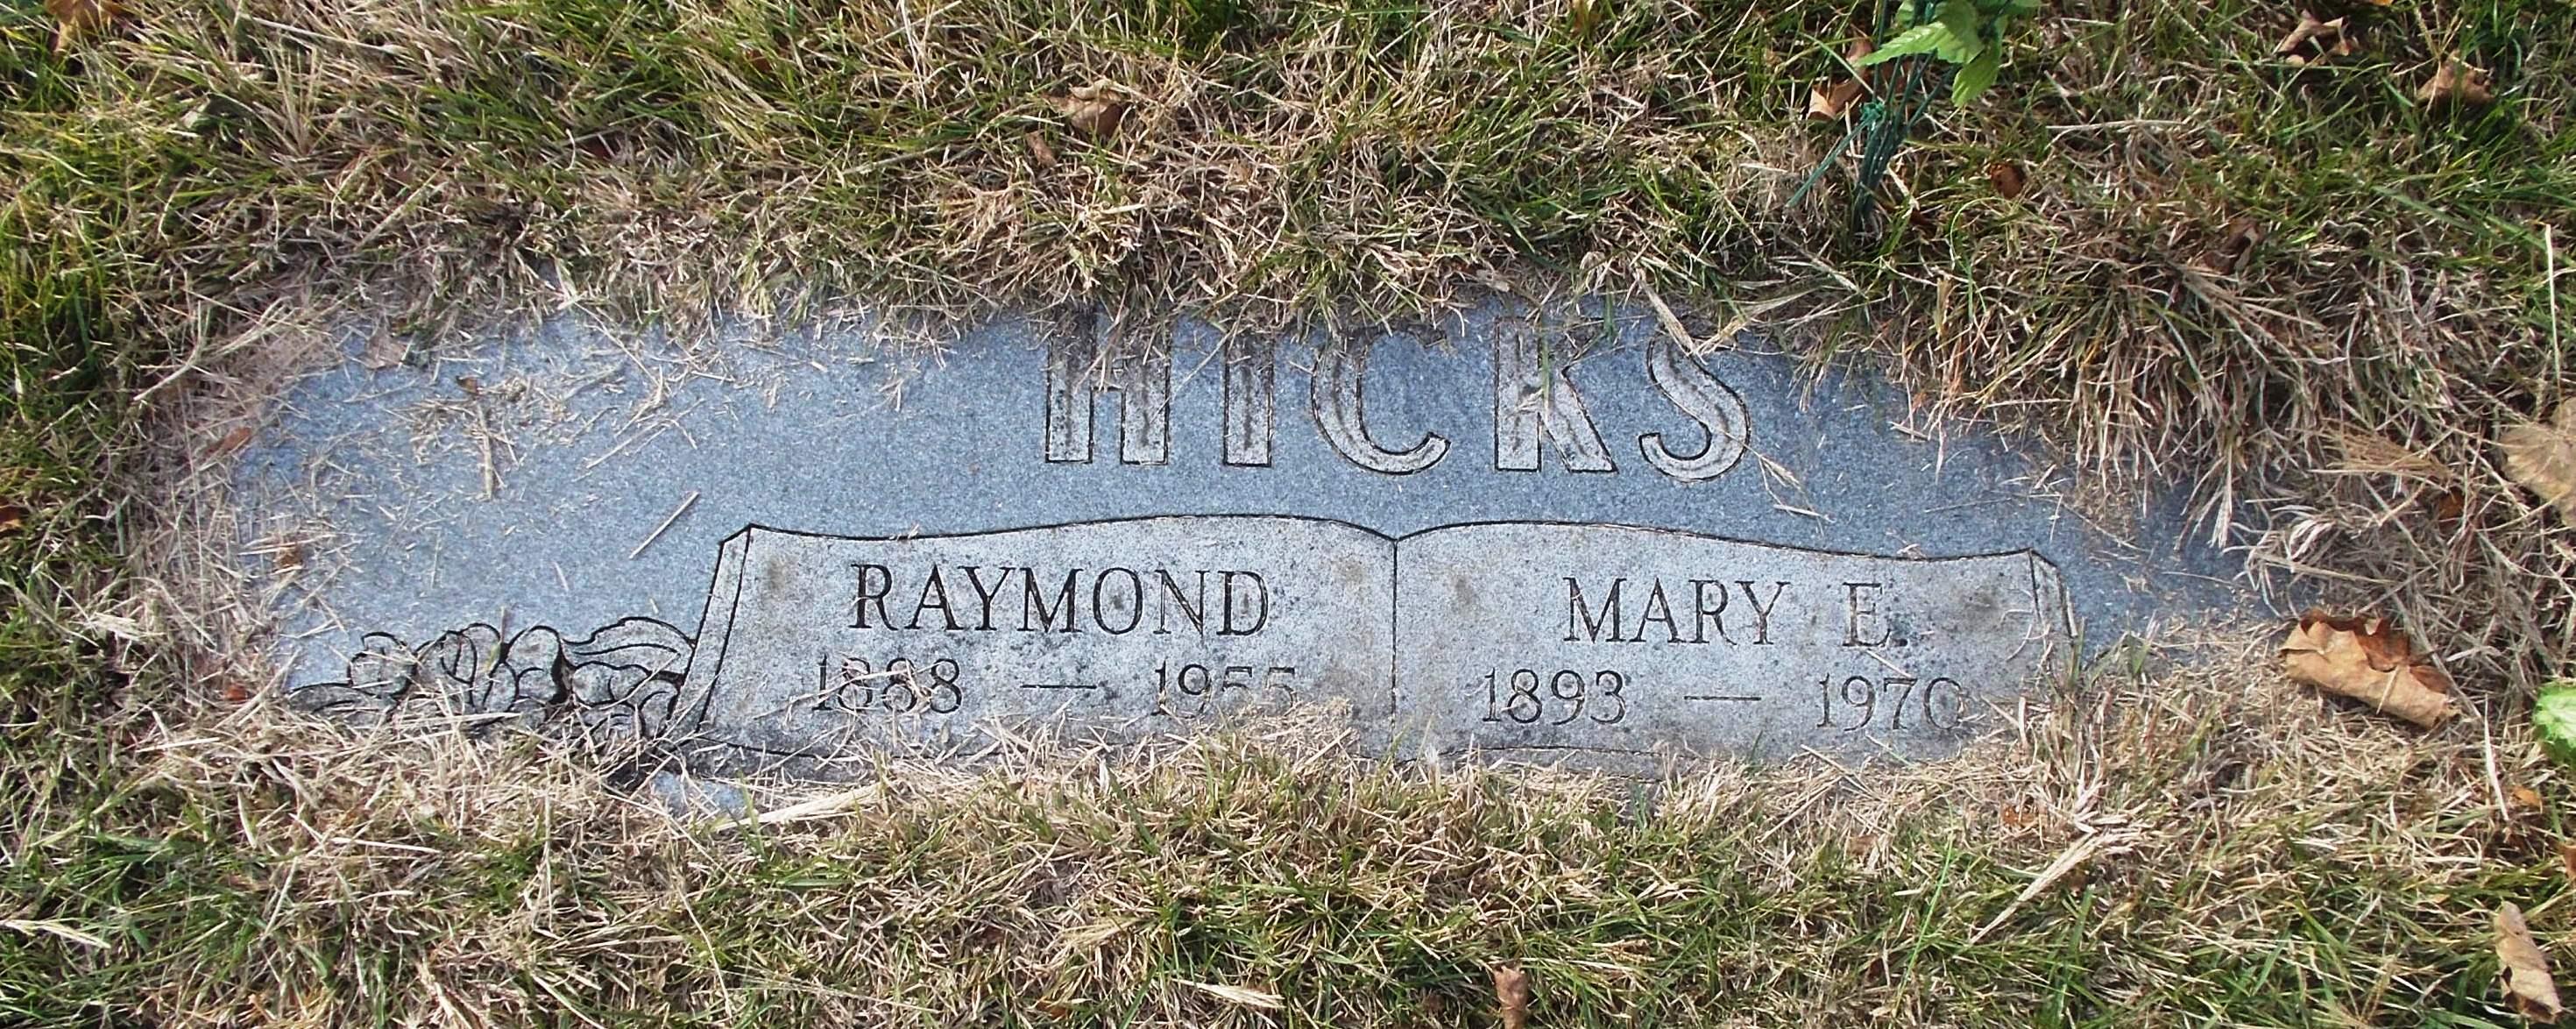 Mary E Hicks